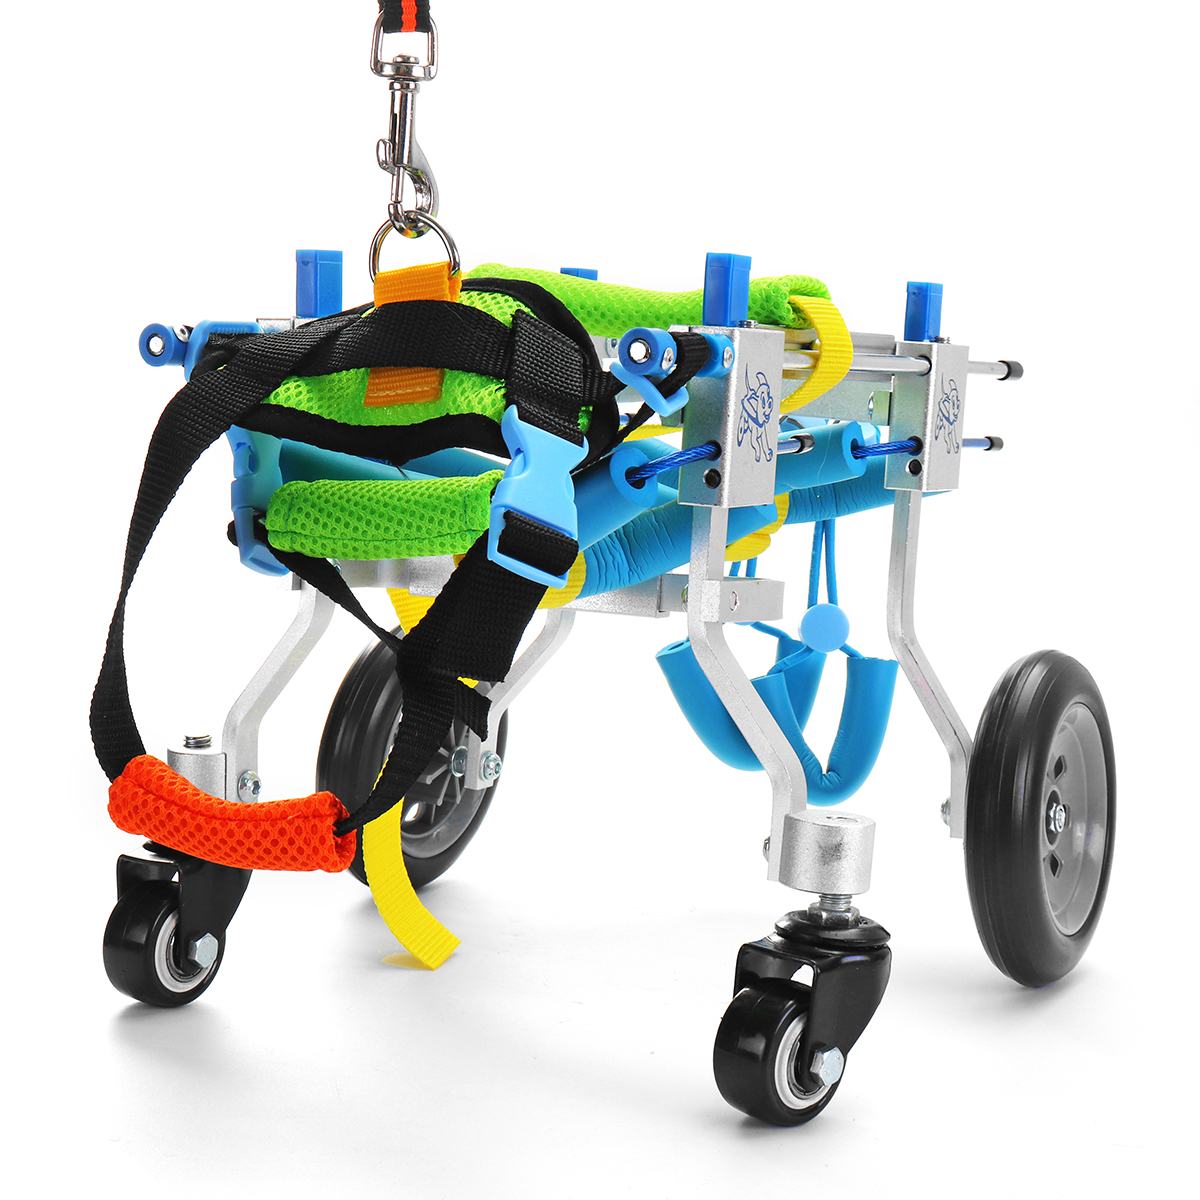 

Pet Собака Инвалидная коляска с 4 колесами для задних ног с ограниченными возможностями Алюминий XXS Модель С поправкой на вес животного 1-3 кг